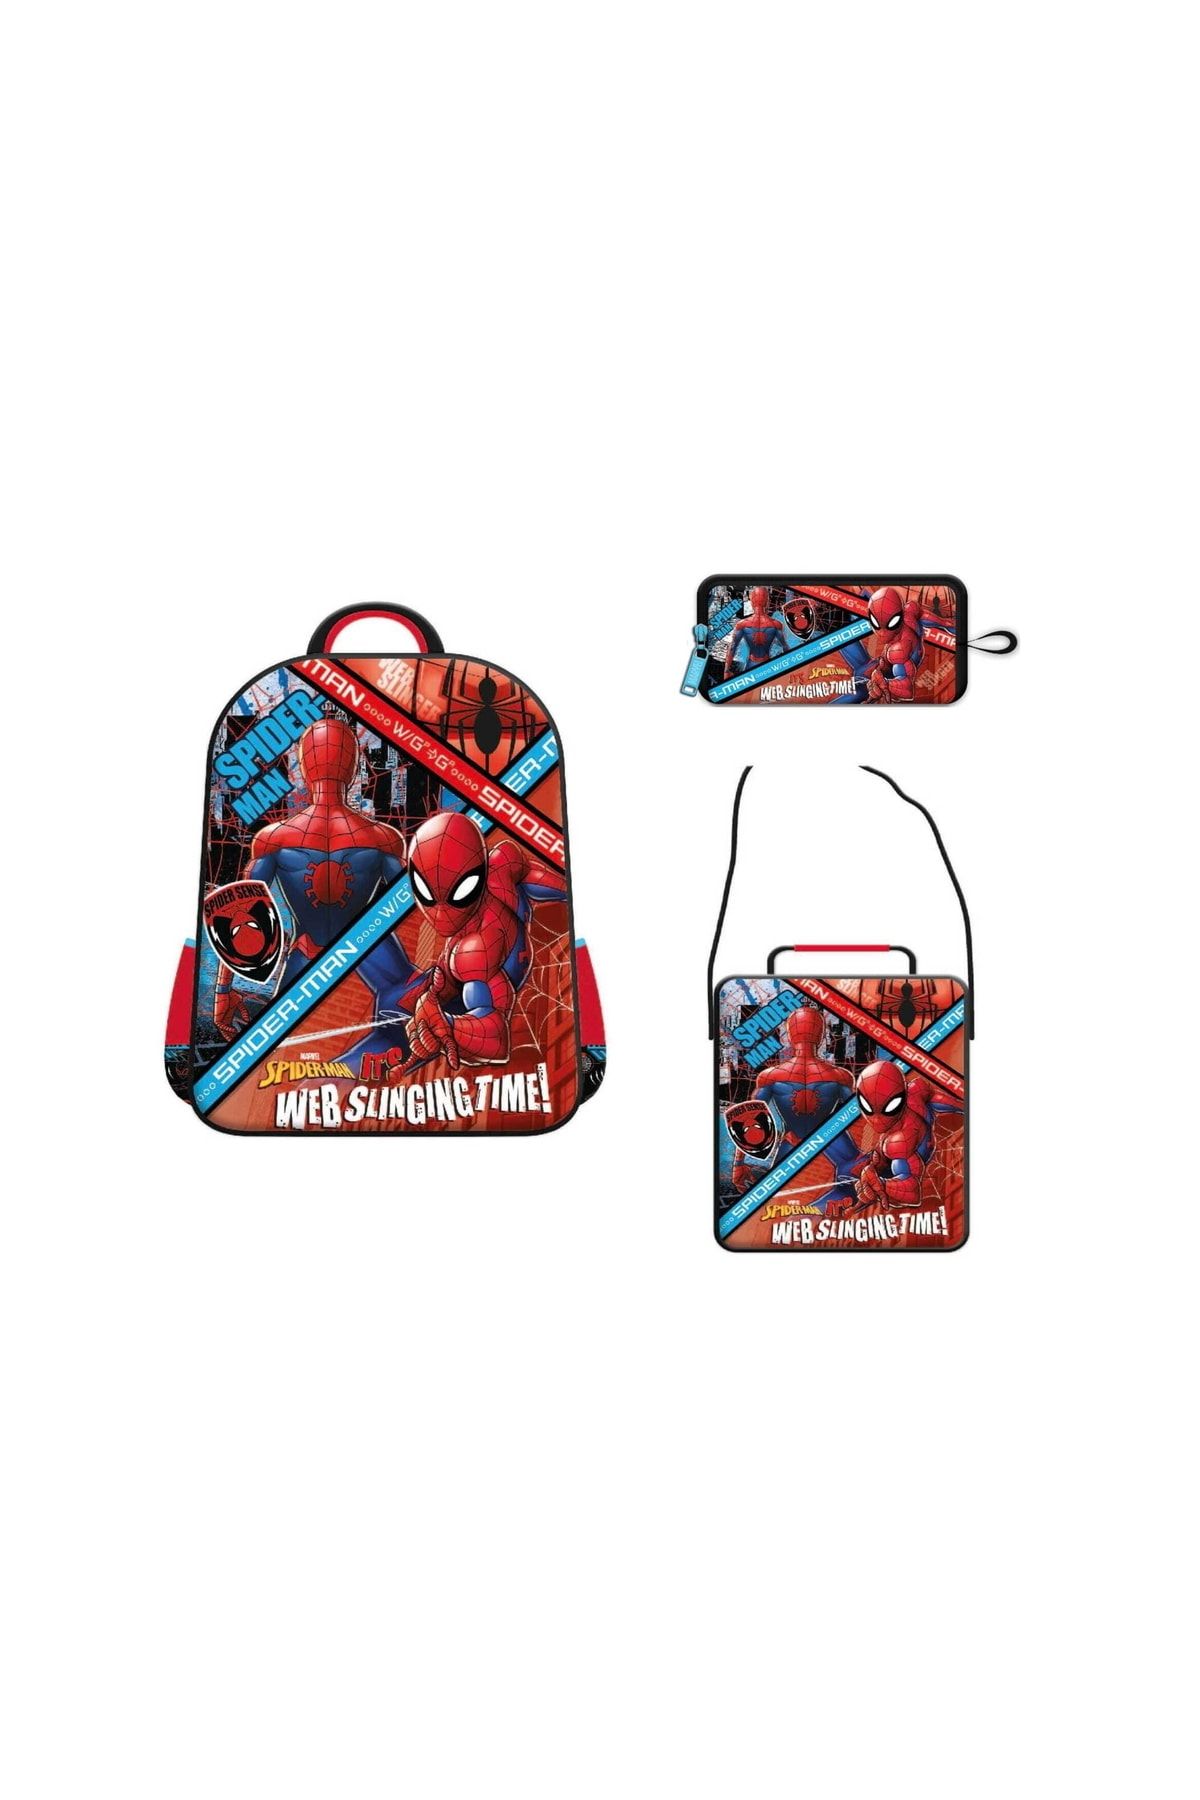 Spiderman Lisanslı Anaokulu Çanta Seti Brick Web Slinging Time